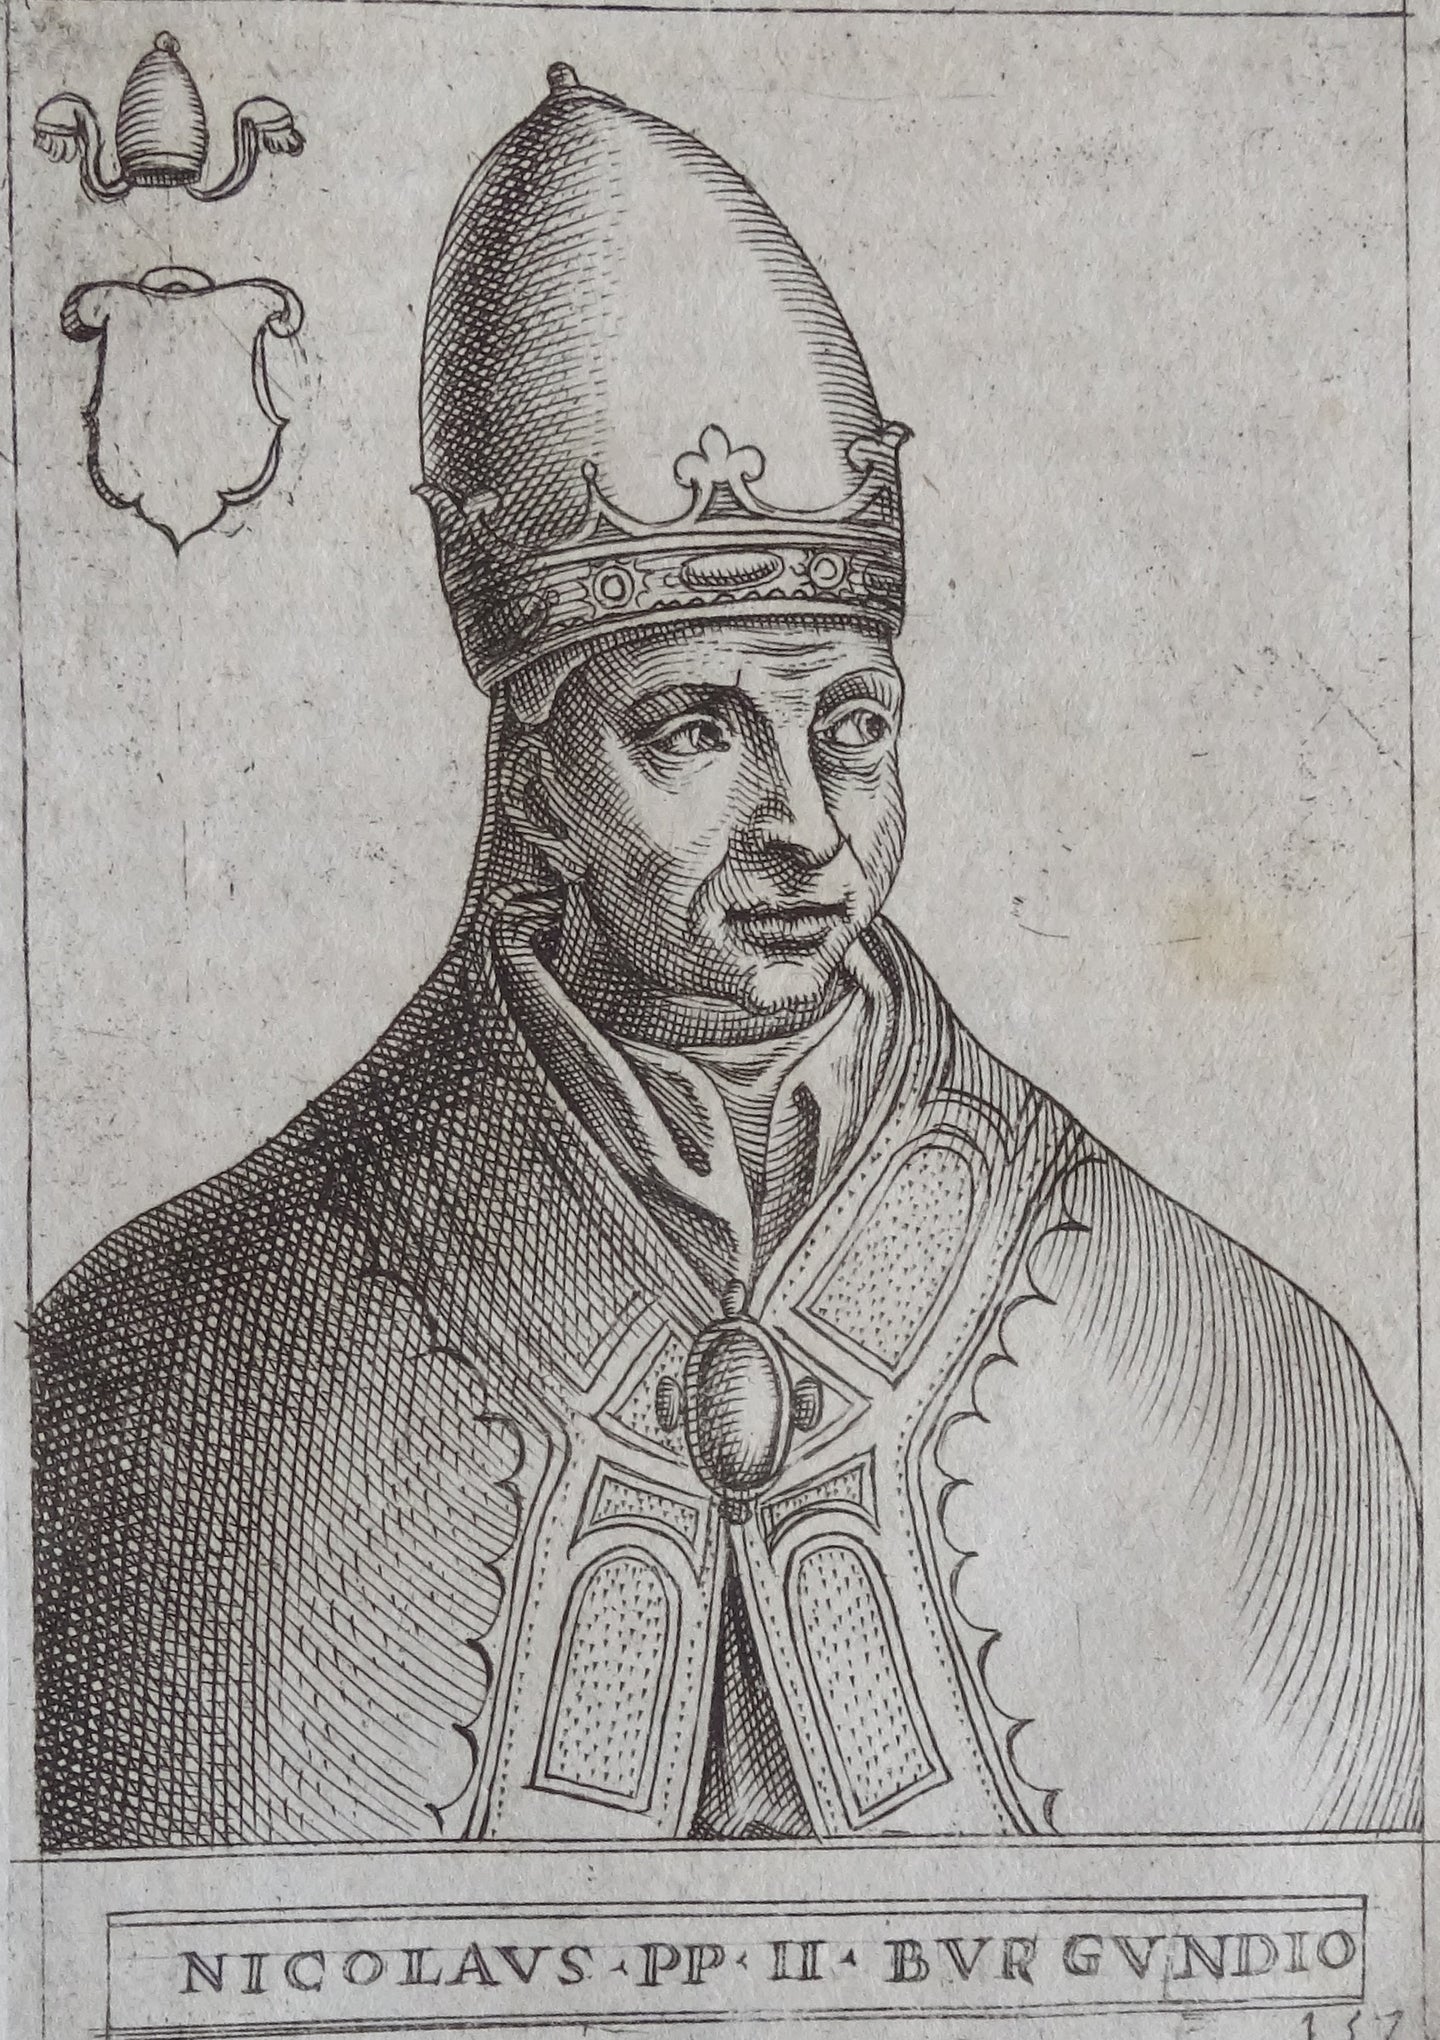 Nicolaus II